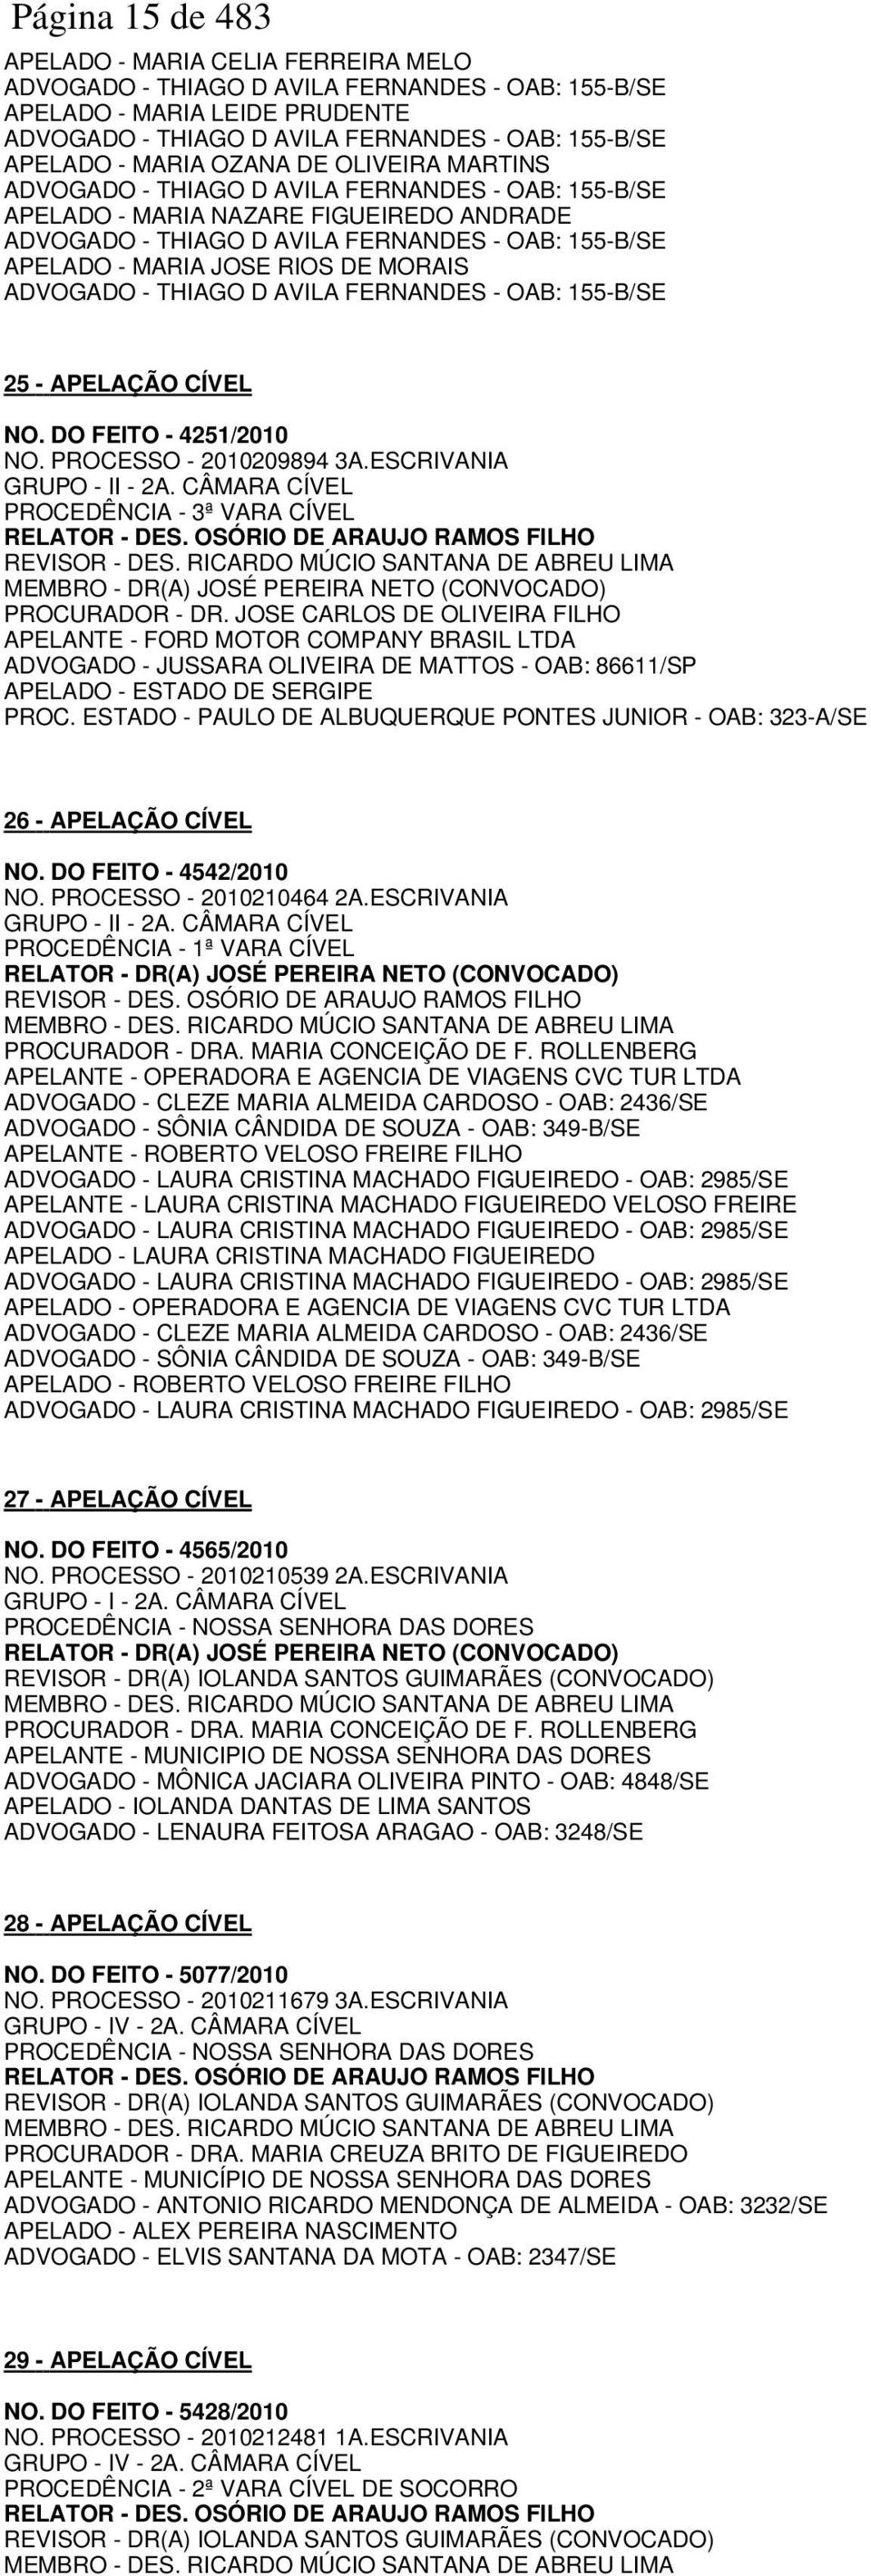 RIOS DE MORAIS ADVOGADO - THIAGO D AVILA FERNANDES - OAB: 155-B/SE 25 - APELAÇÃO CÍVEL NO. DO FEITO - 4251/2010 NO. PROCESSO - 2010209894 3A.ESCRIVANIA GRUPO - II - 2A.